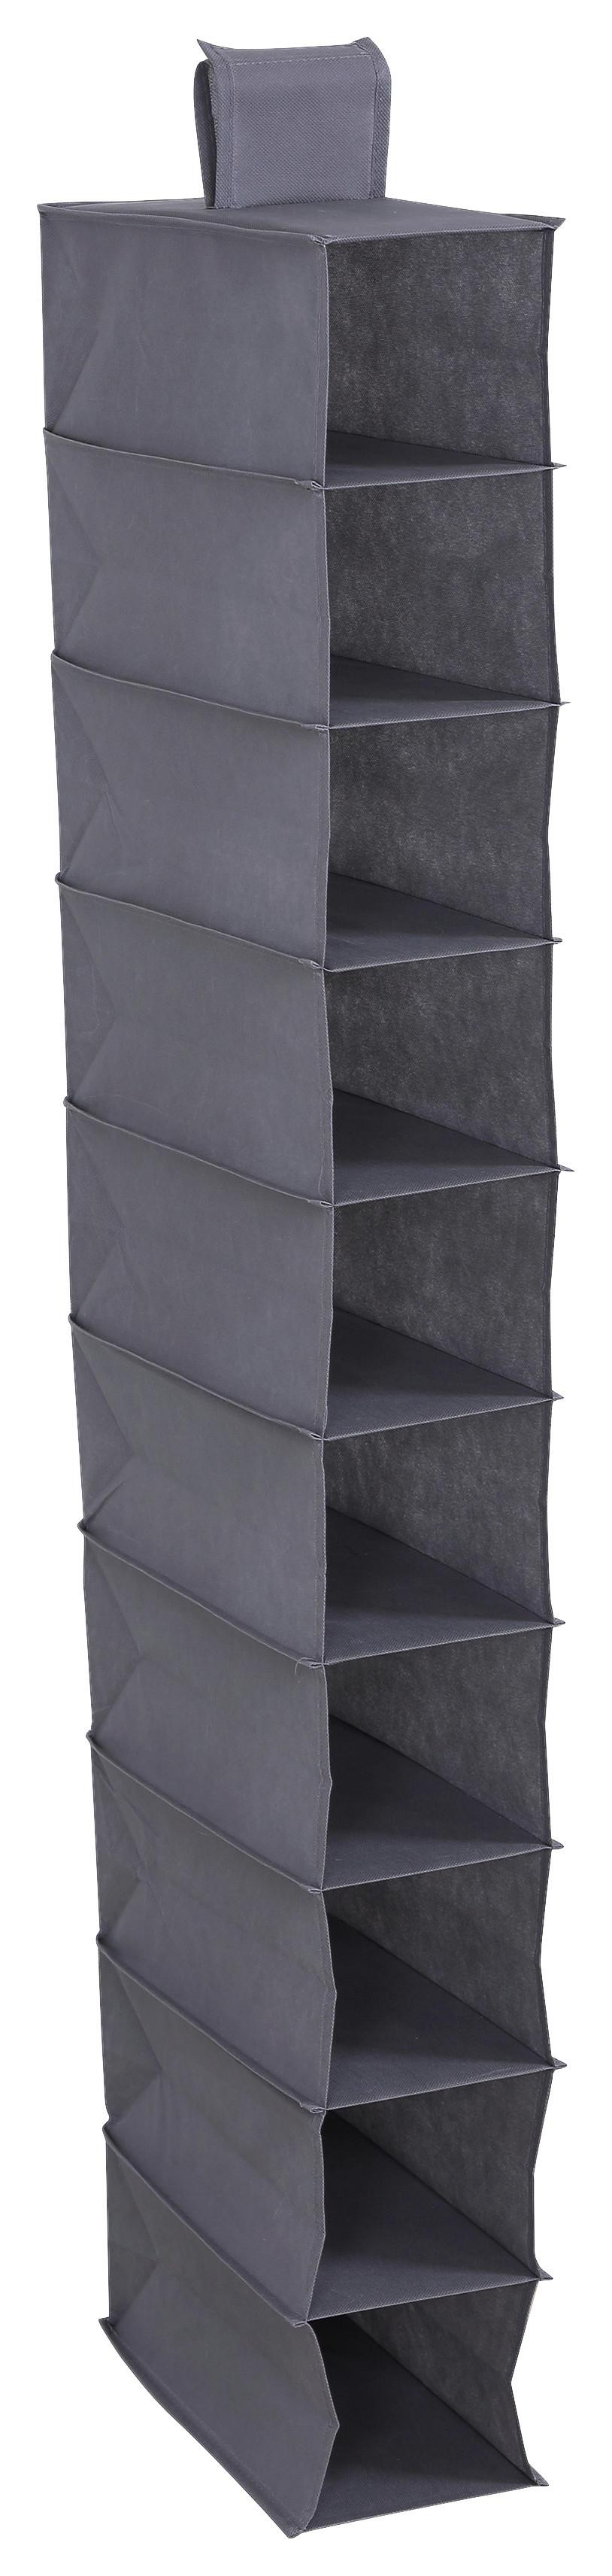 Hängeorganizer in Grau - Grau, Konventionell, Karton/Textil (33/125/15cm) - Modern Living